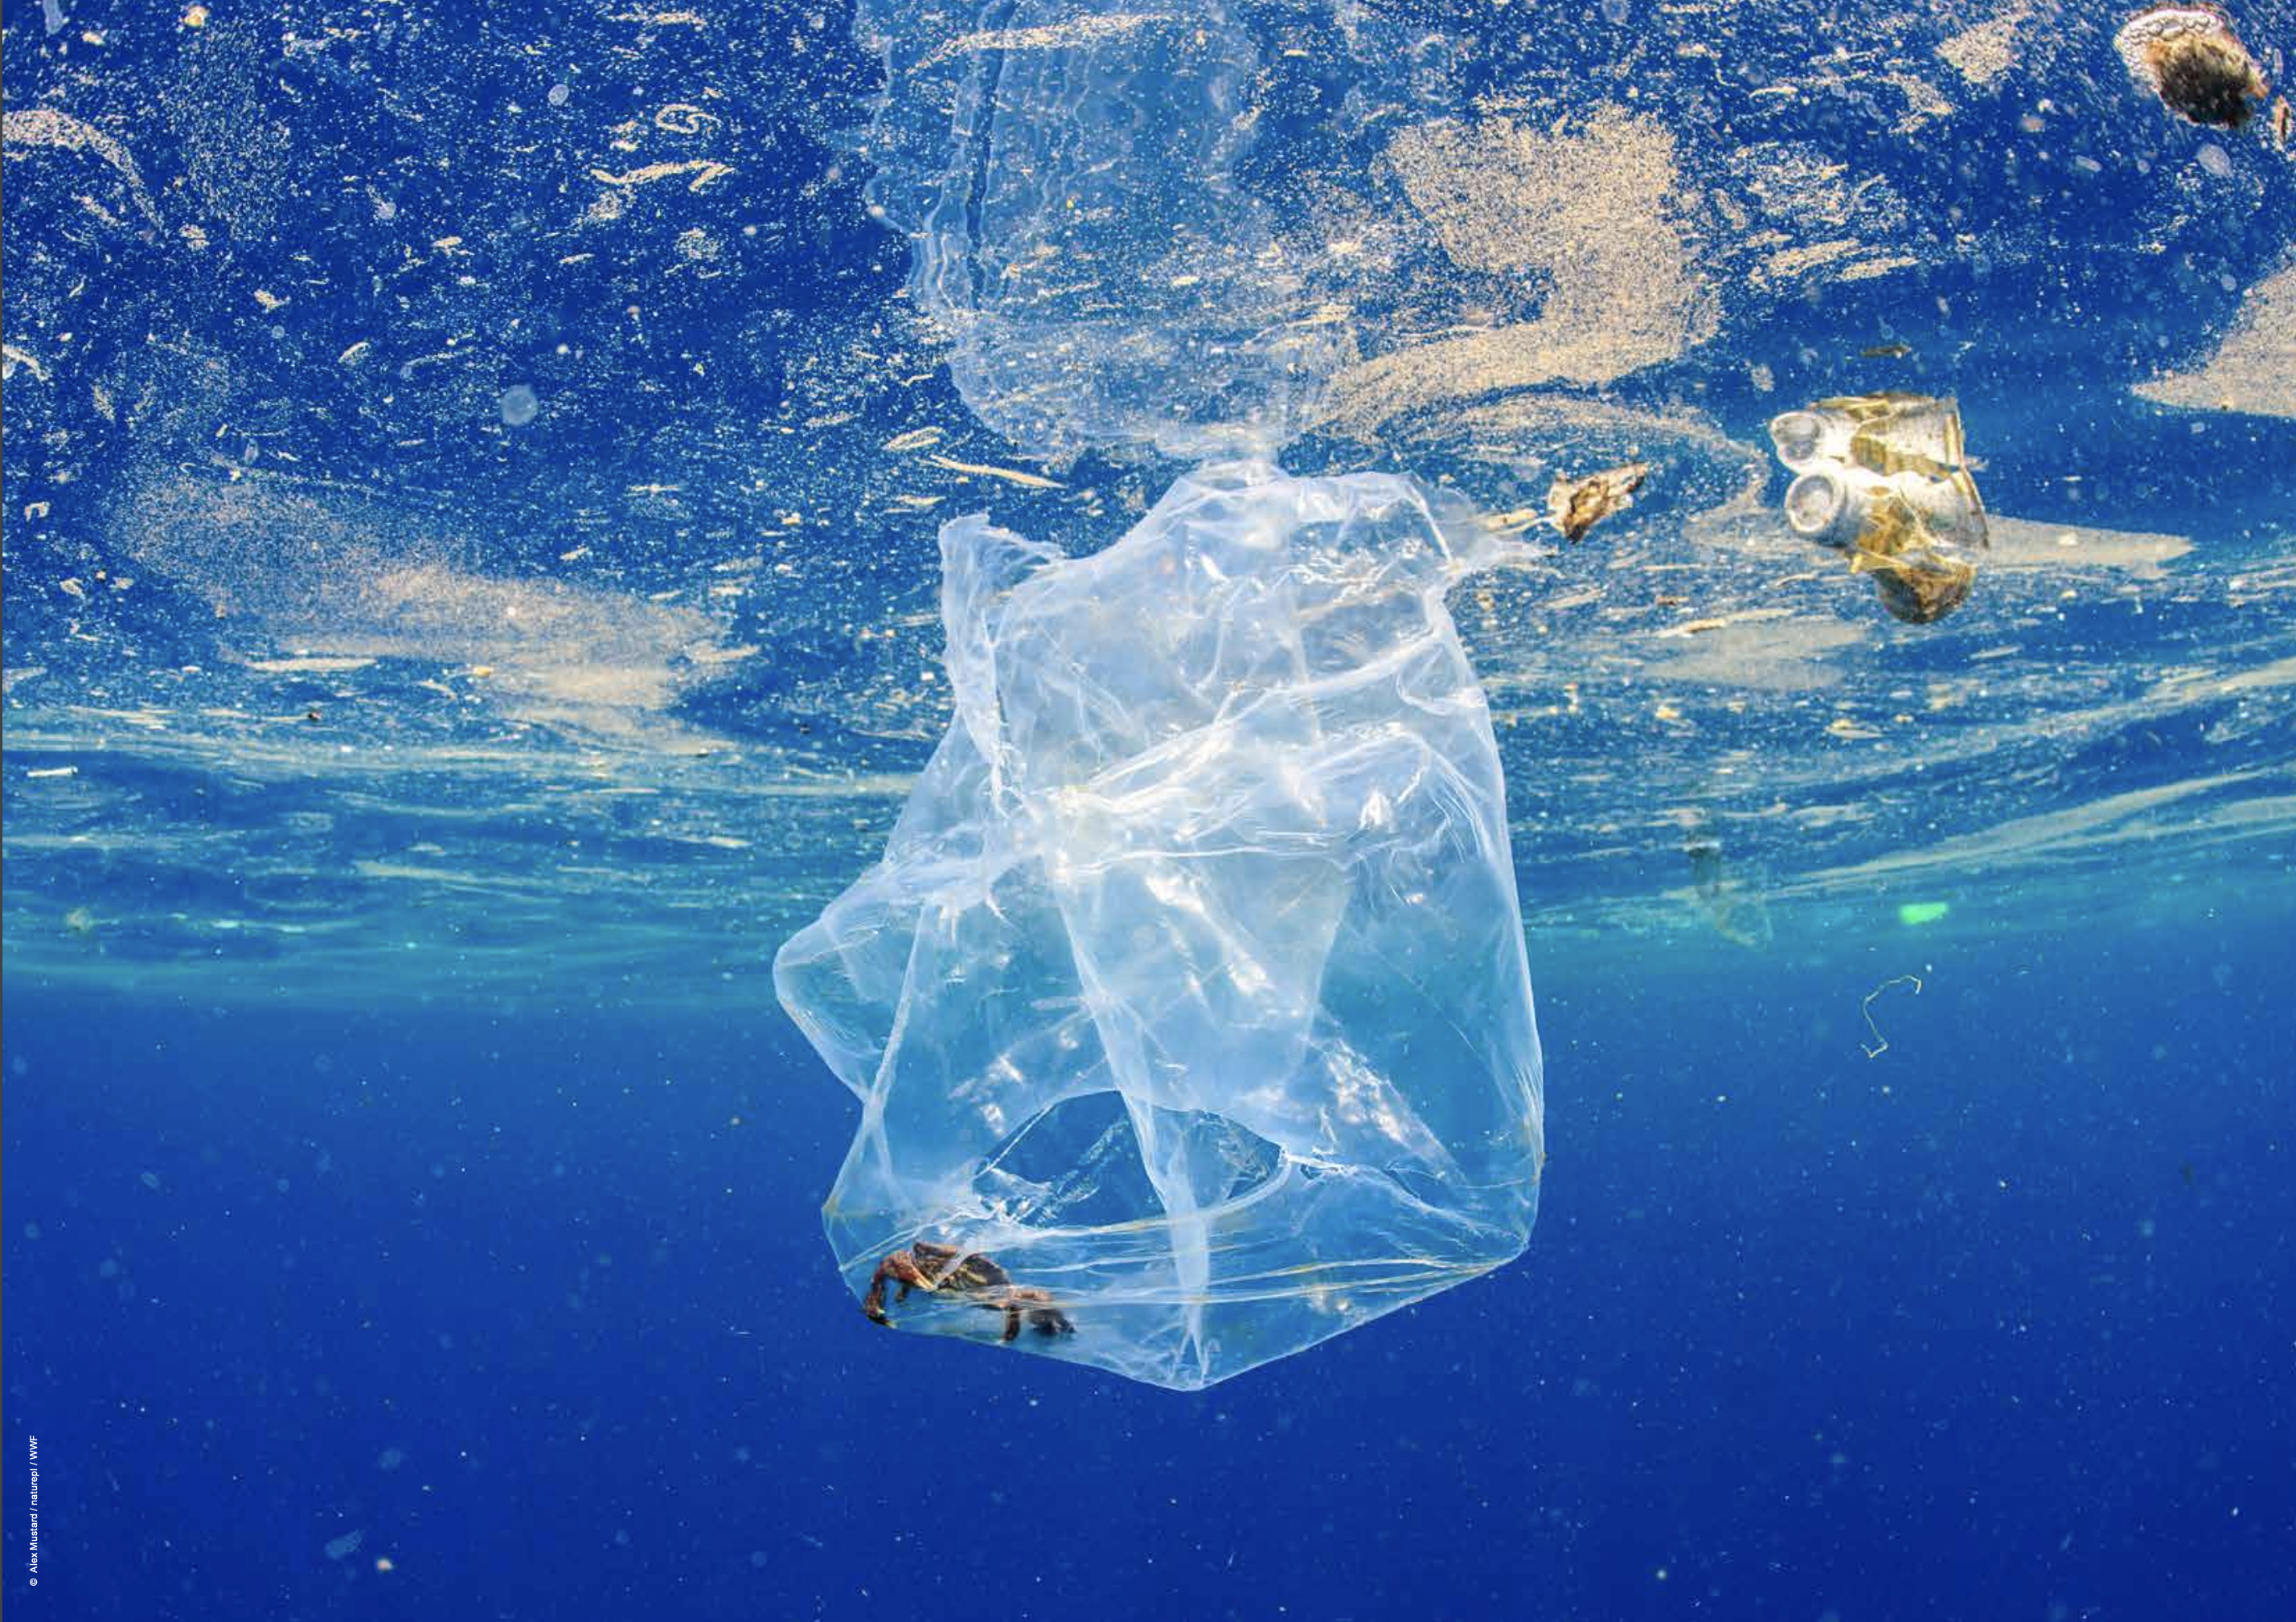 Plastic waste in ocean